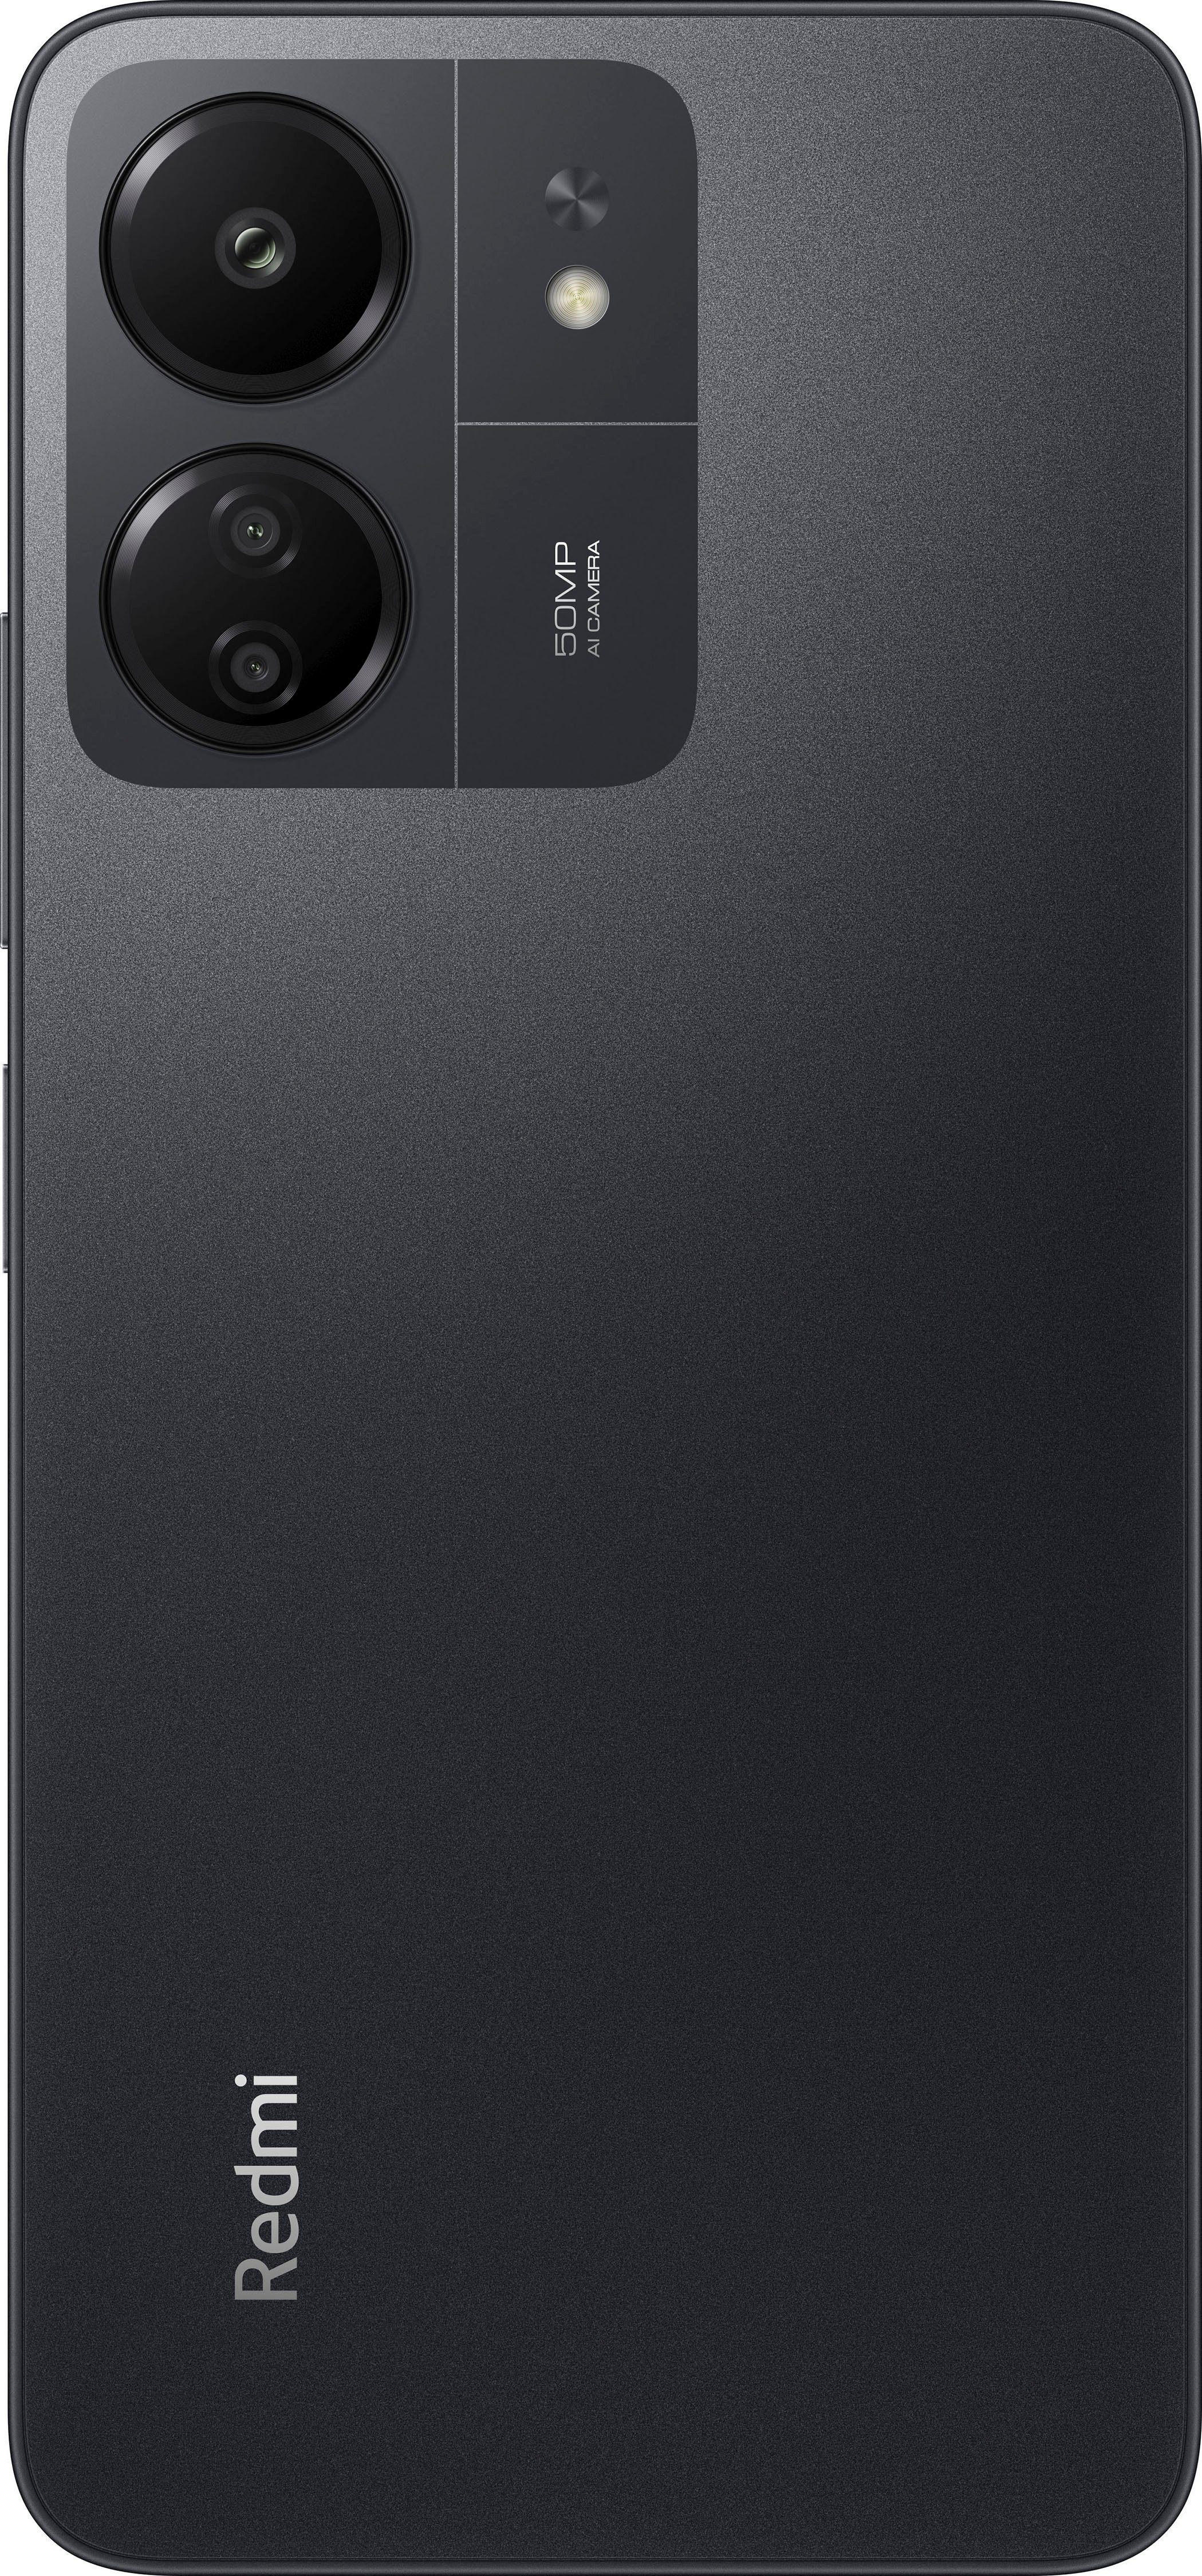 MP 50 Xiaomi 8GB+256GB Speicherplatz, 256 Zoll, 13C cm/6,74 Schwarz Smartphone Kamera) Redmi (17,1 GB